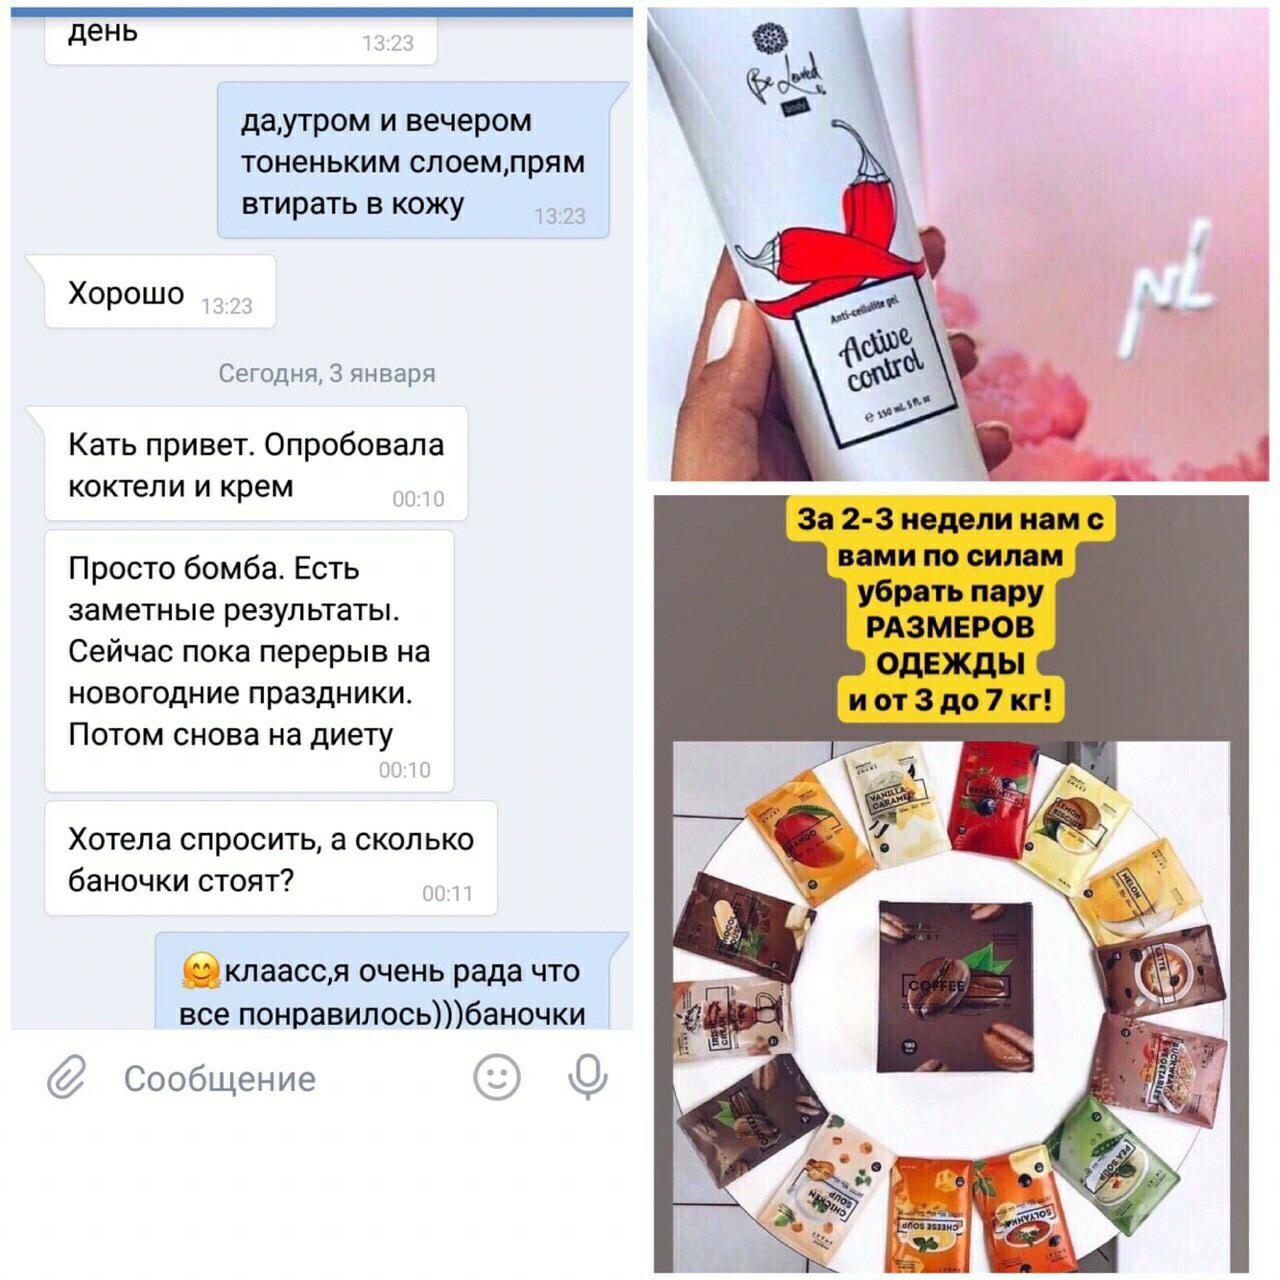 Energy diet в НАЛИЧИИ в Кирове